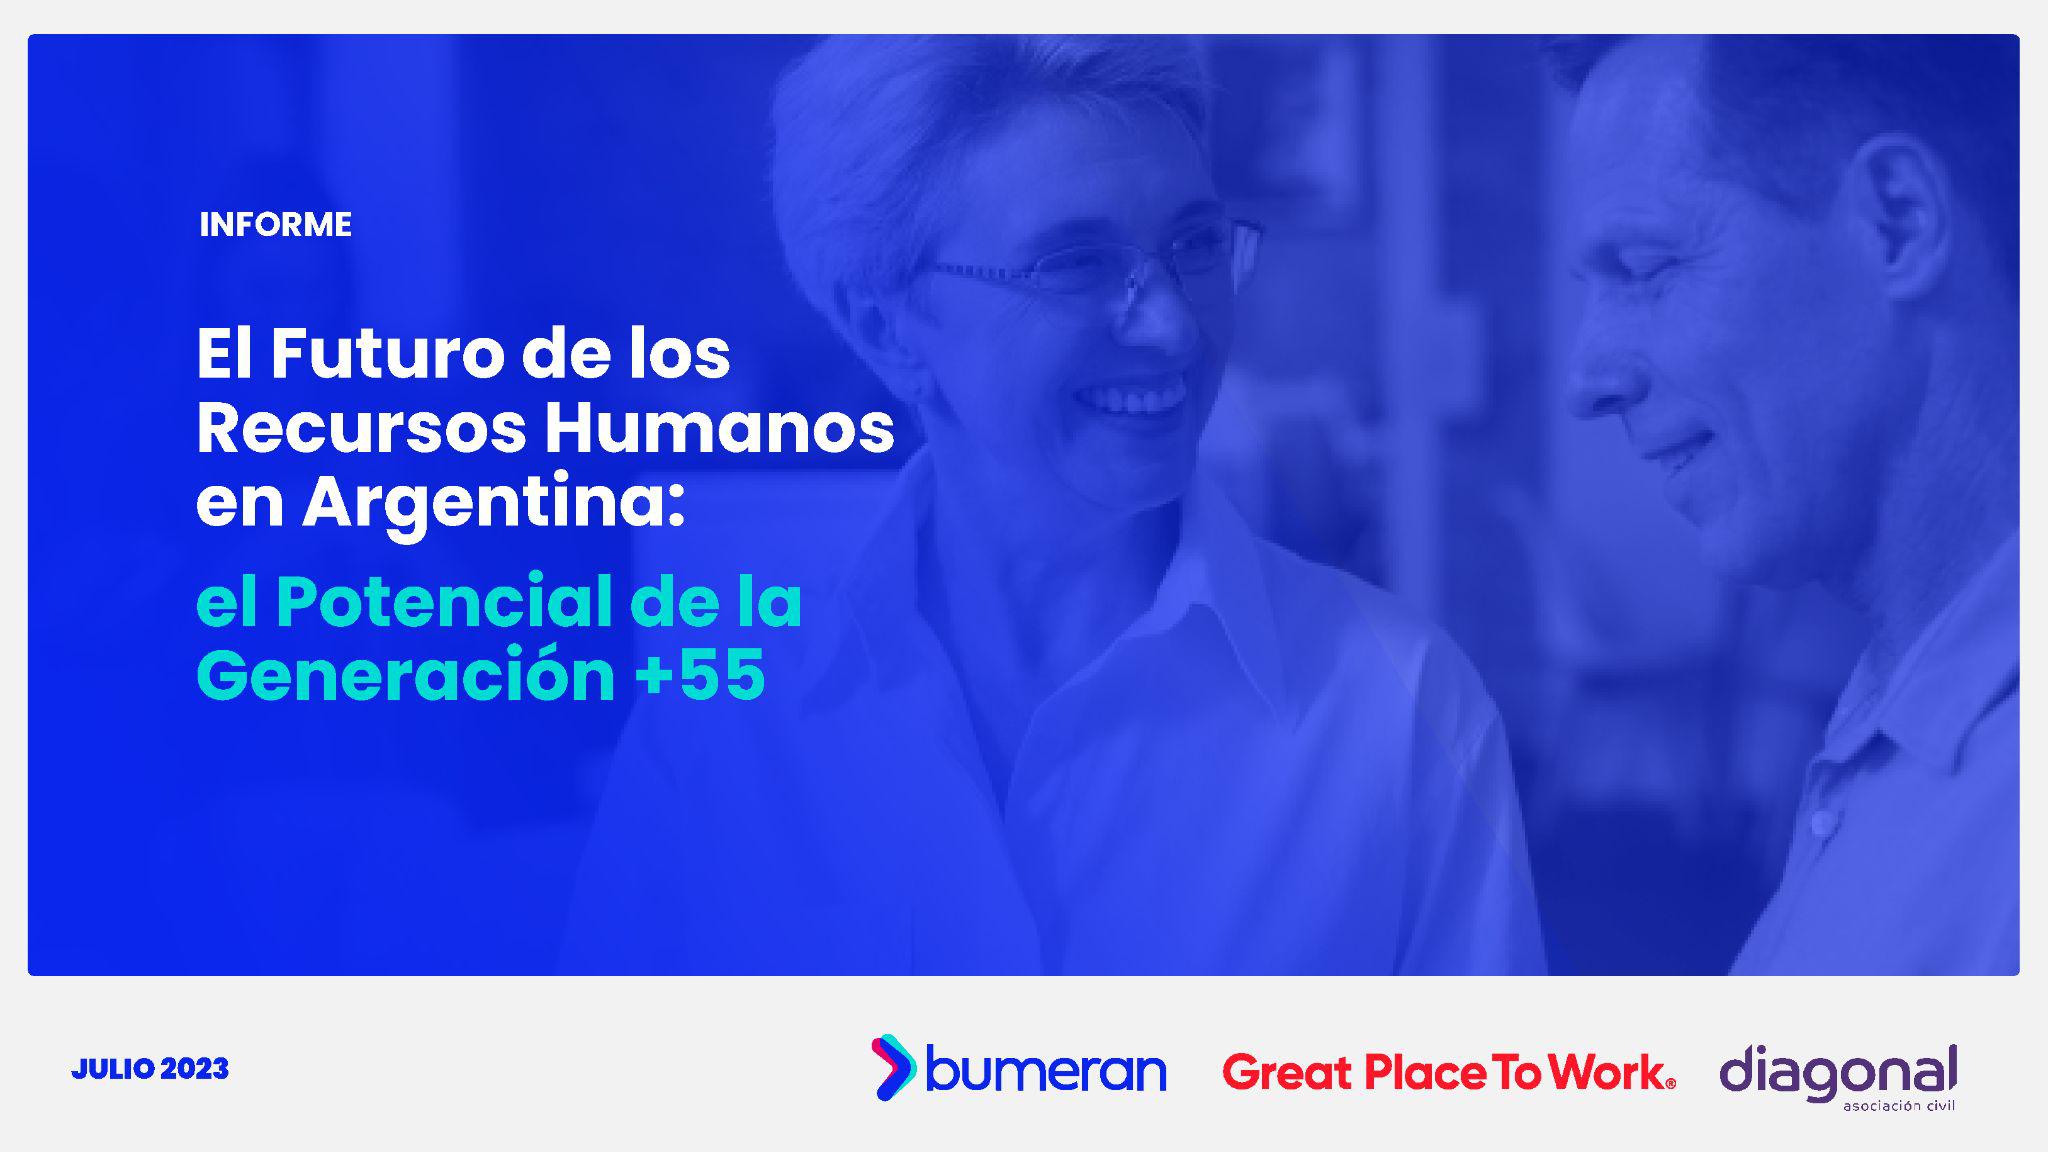 El Futuro de los Recursos Humanos en Argentina: El Potencial de la Generación +55